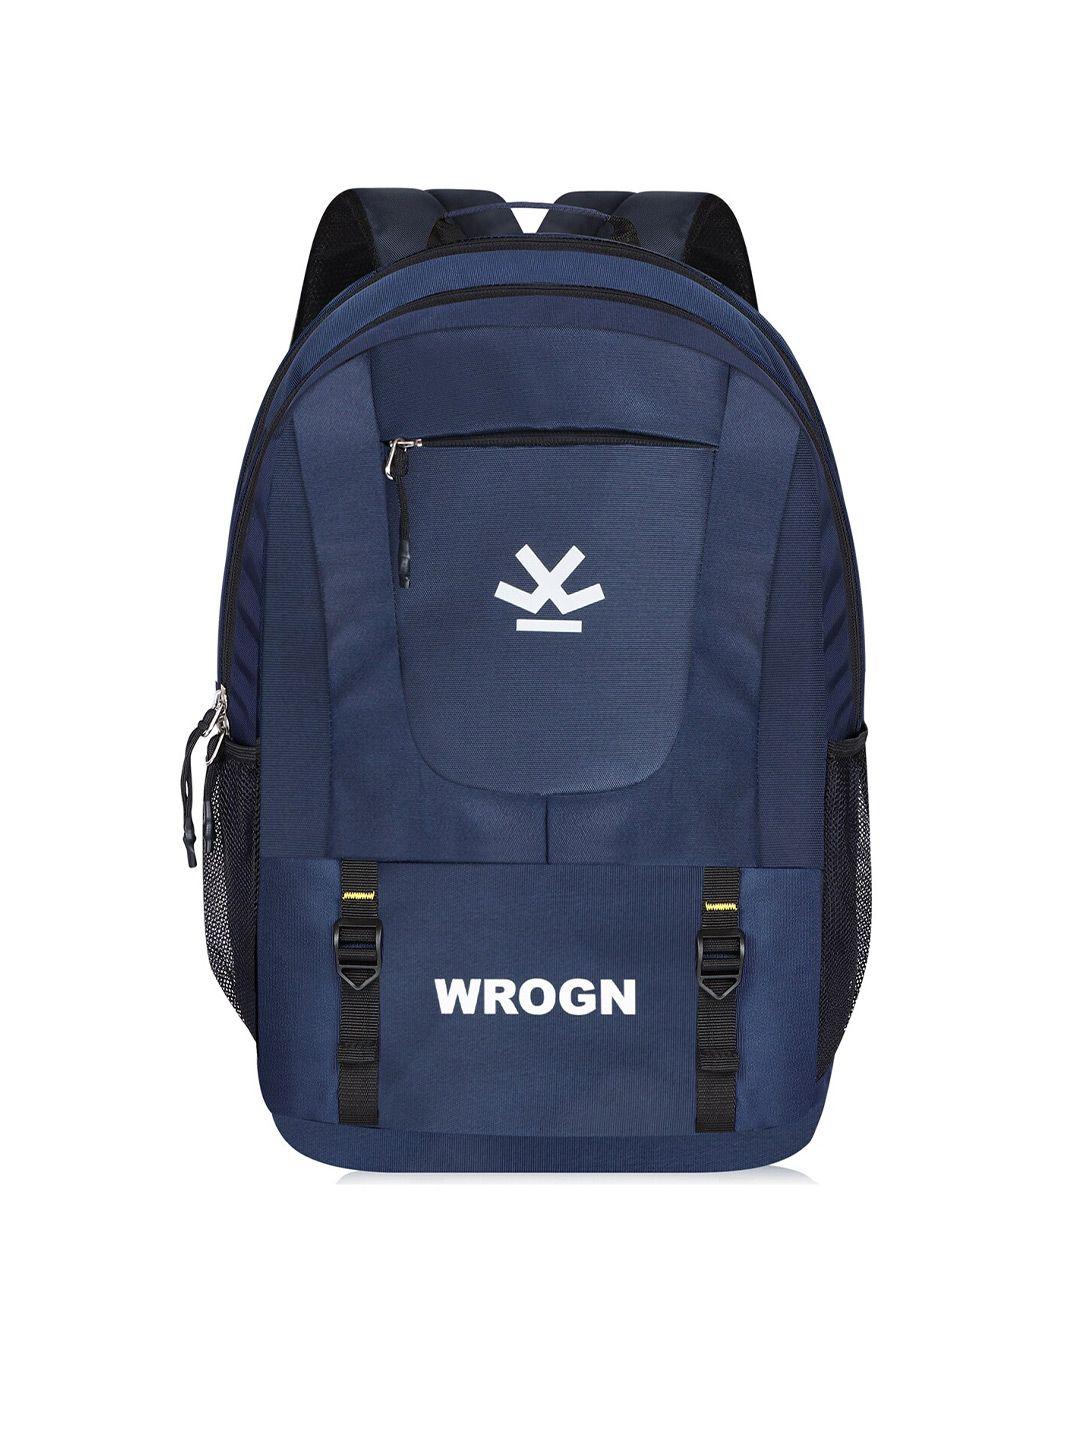 wrogn unisex navy blue backpack